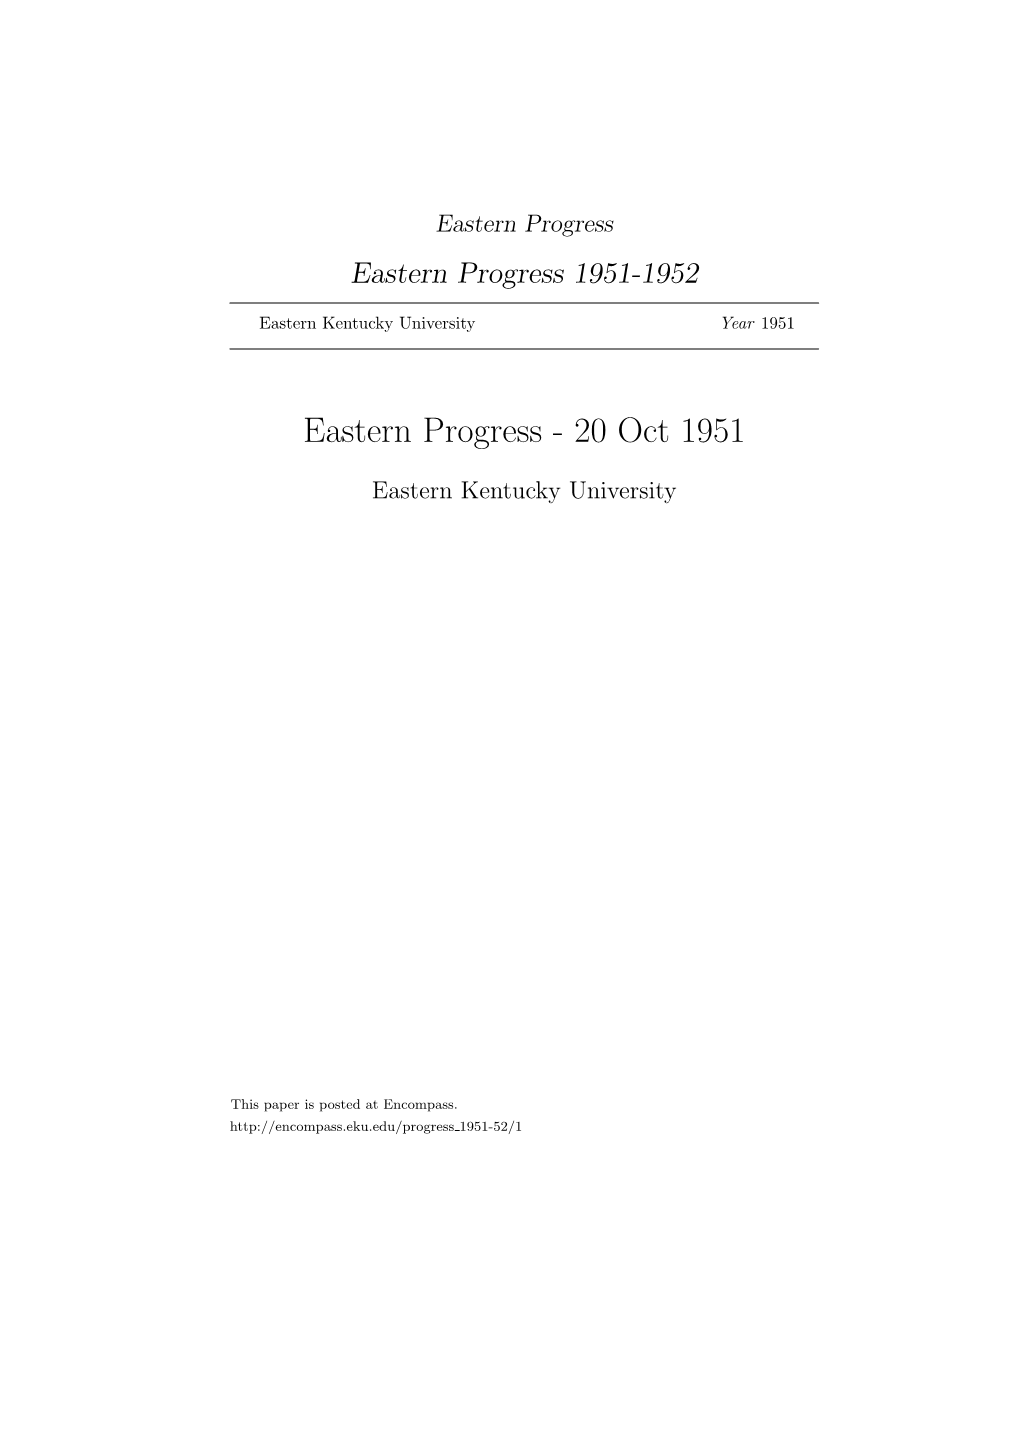 Eastern Progress Eastern Progress 1951-1952